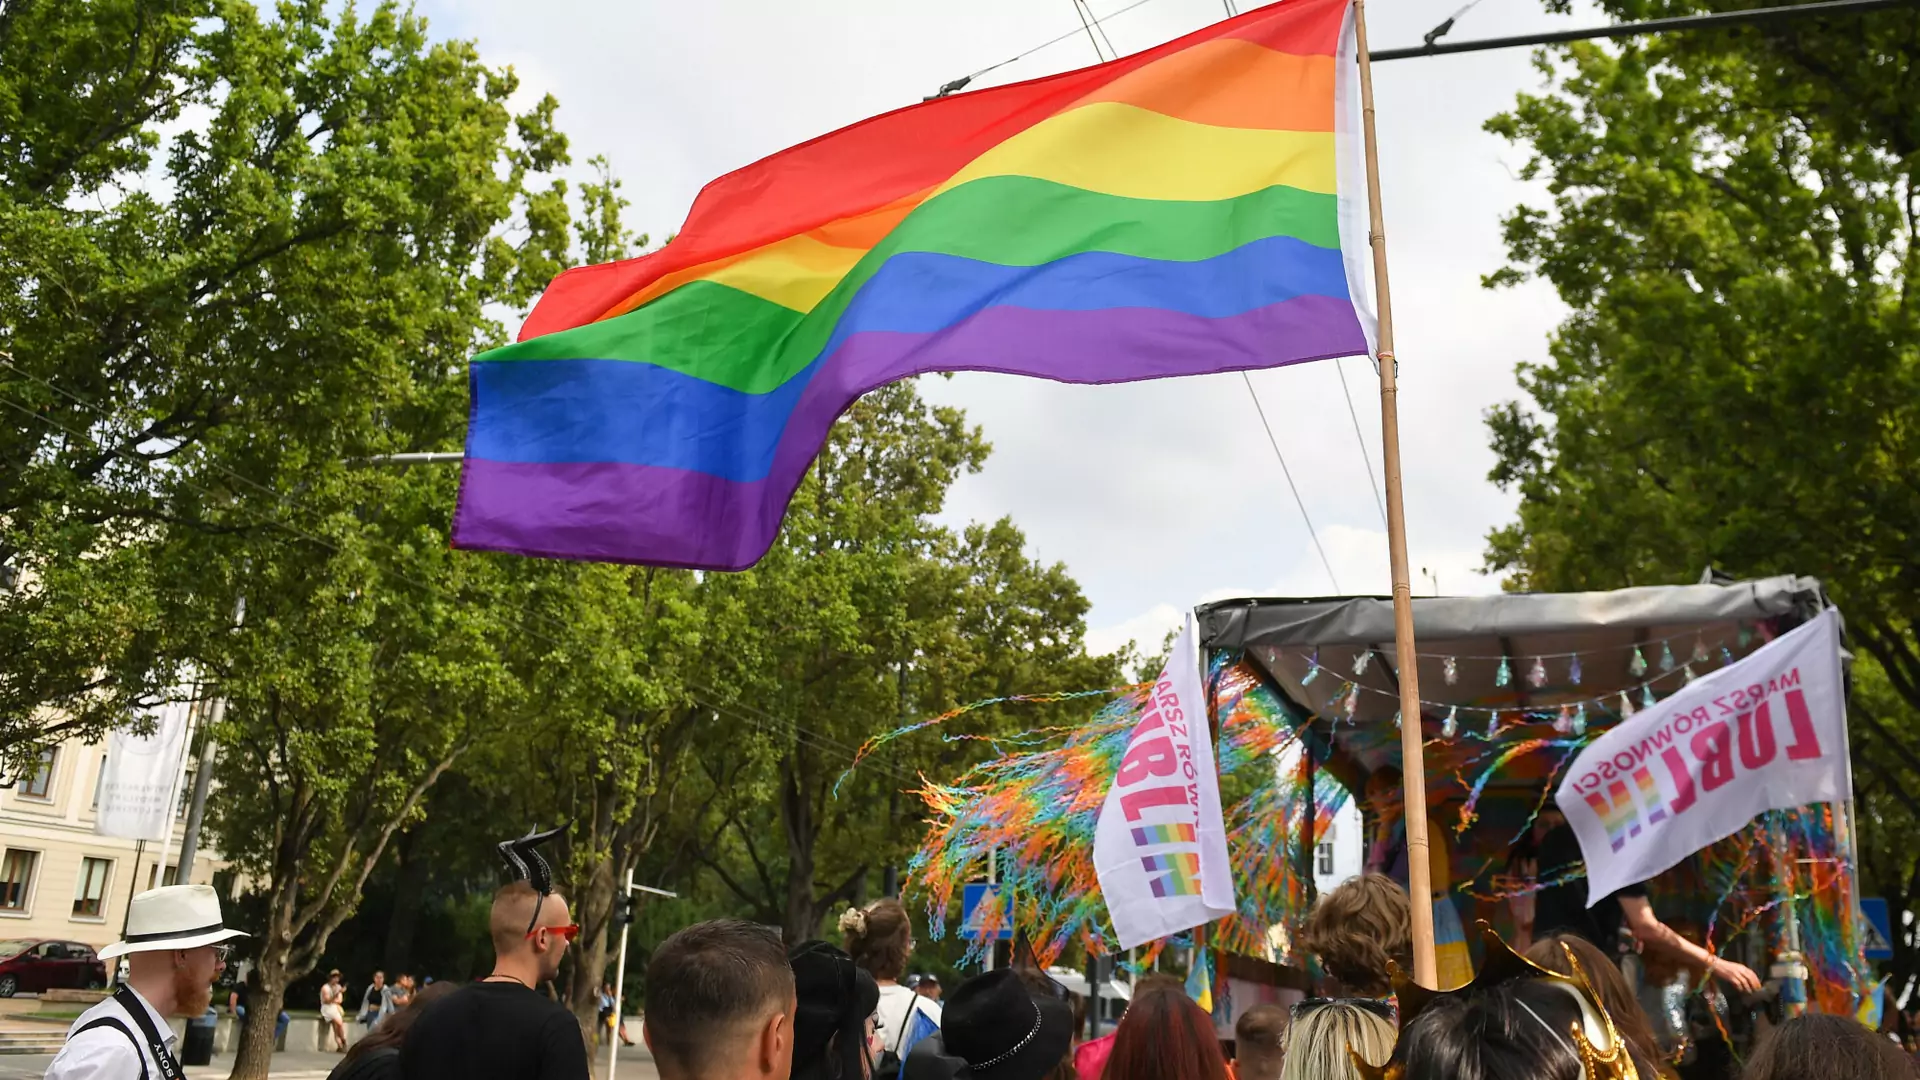 Strefy anty-LGBT zwiększyły liczbę prób samobójczych. Szokujące badanie